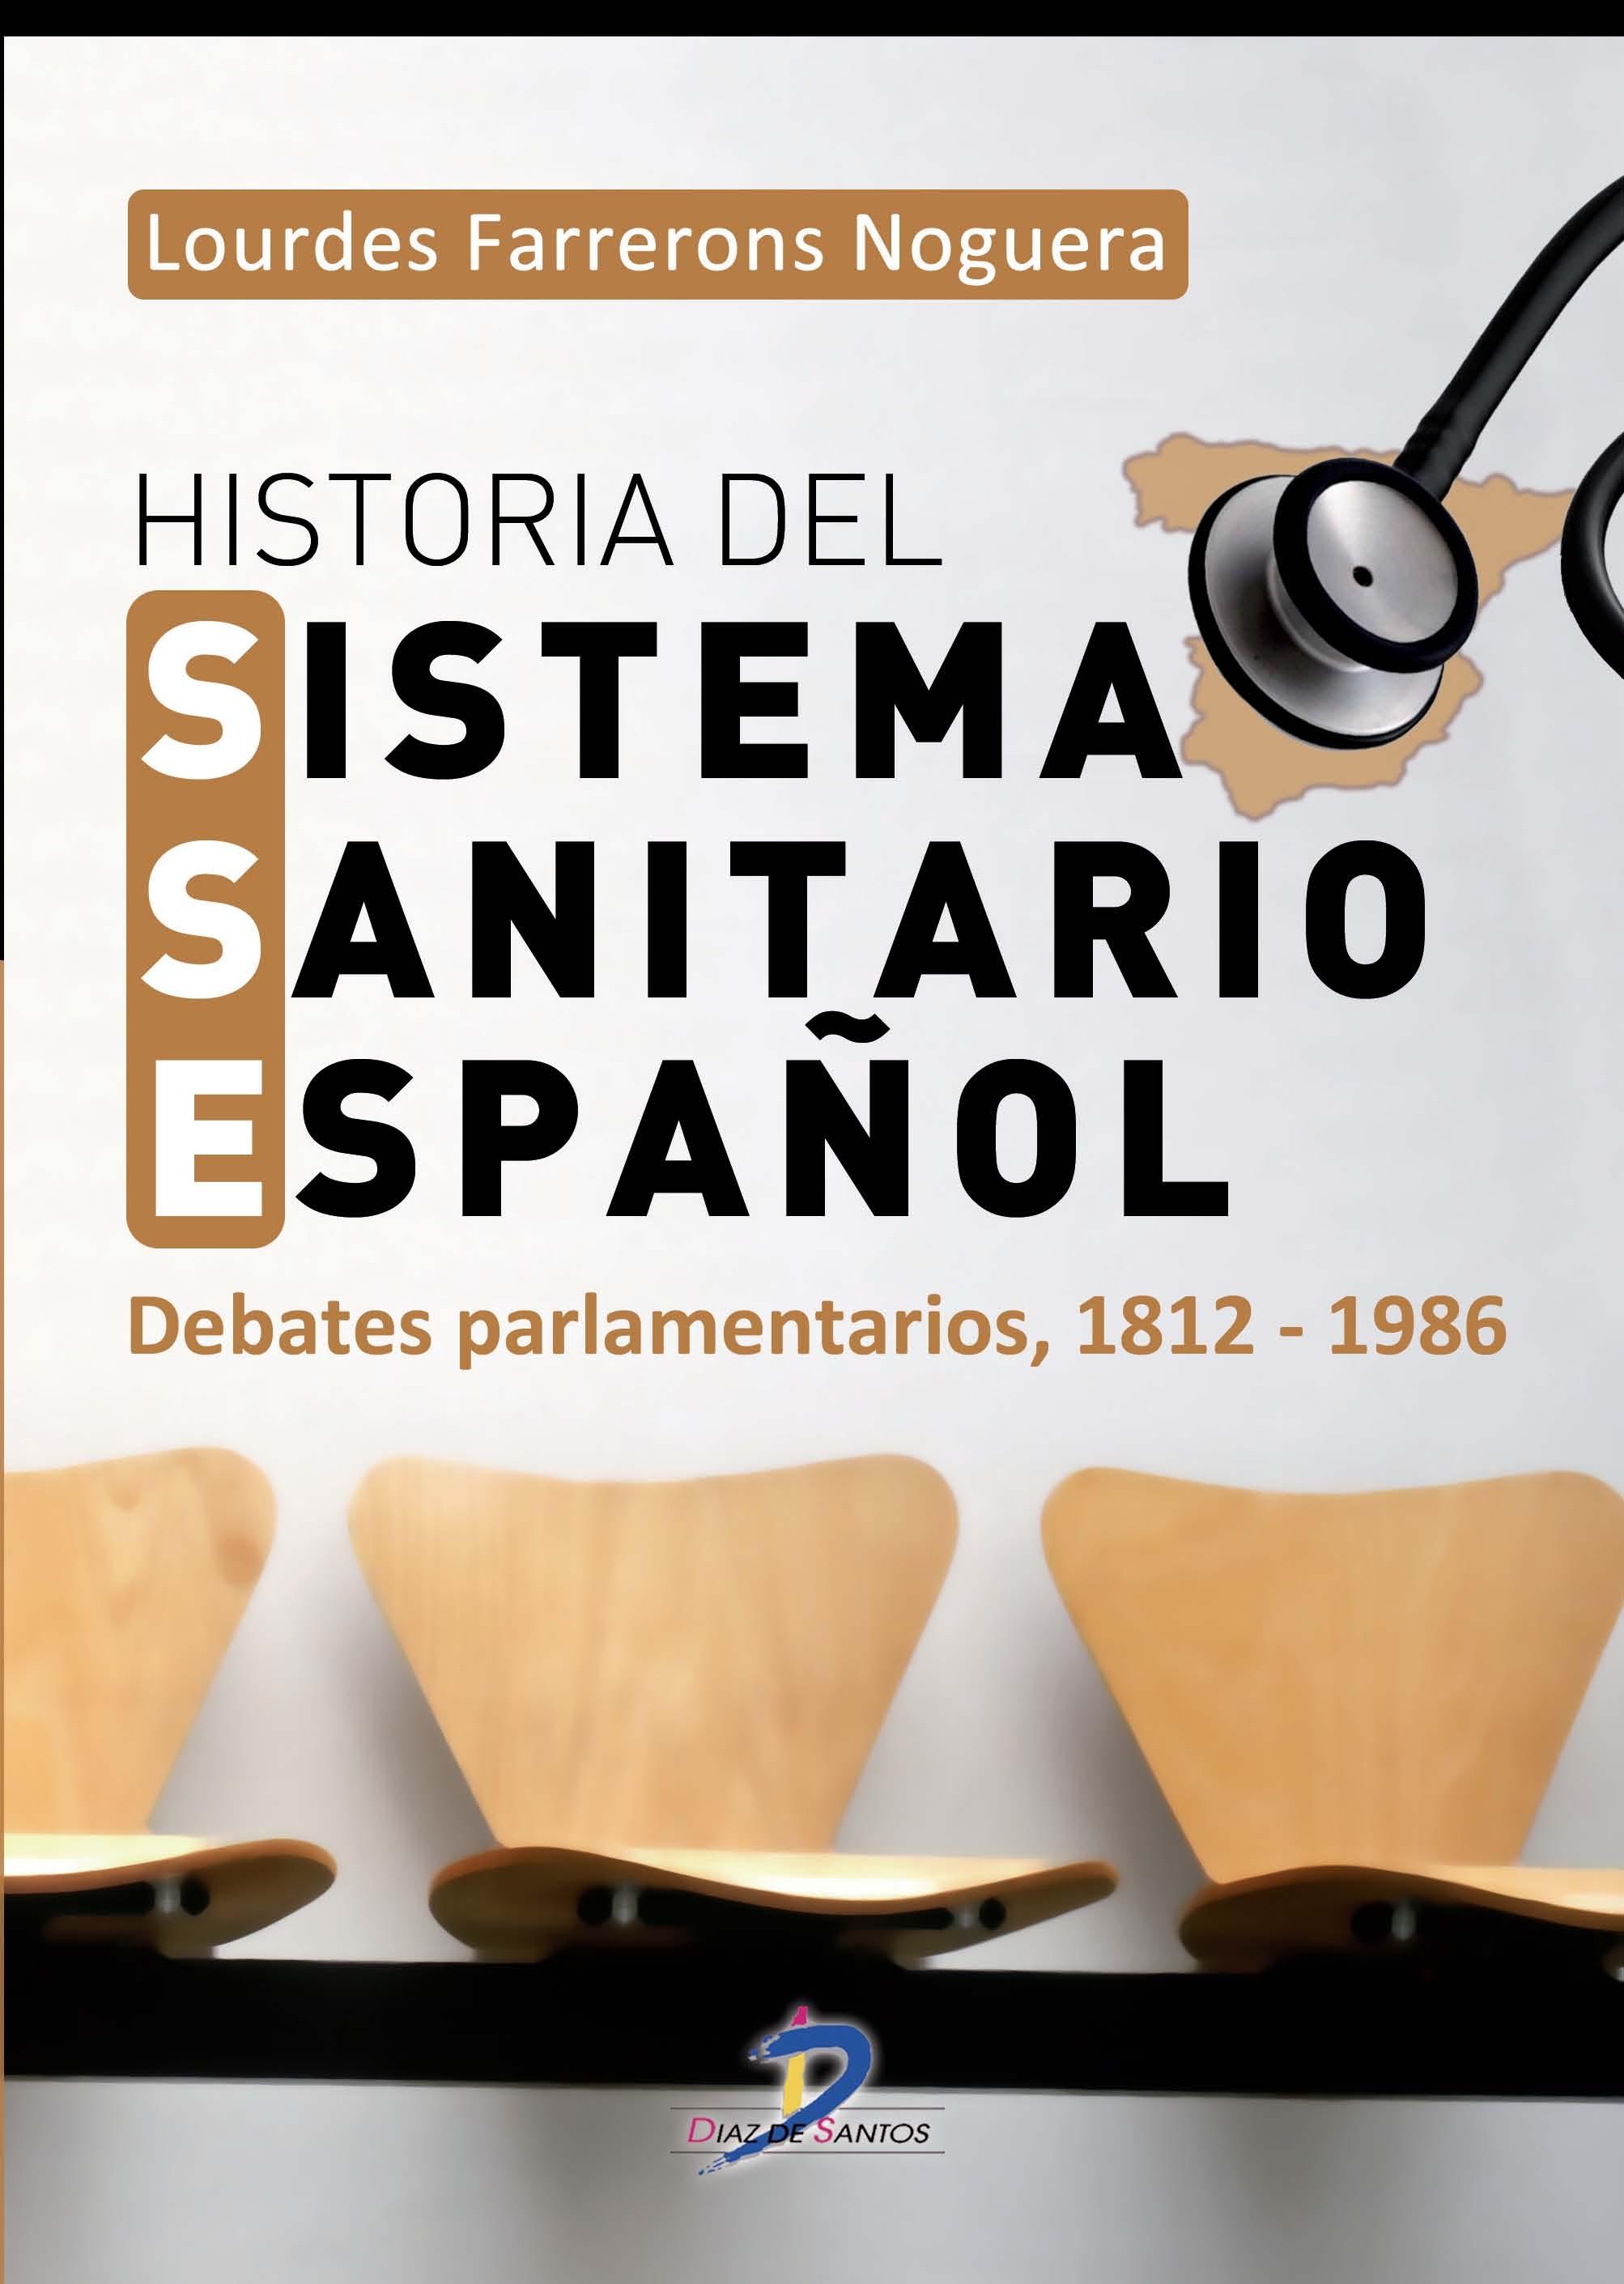 Historia del sistema sanitario español "Debates parlamentarios 1812-1986"